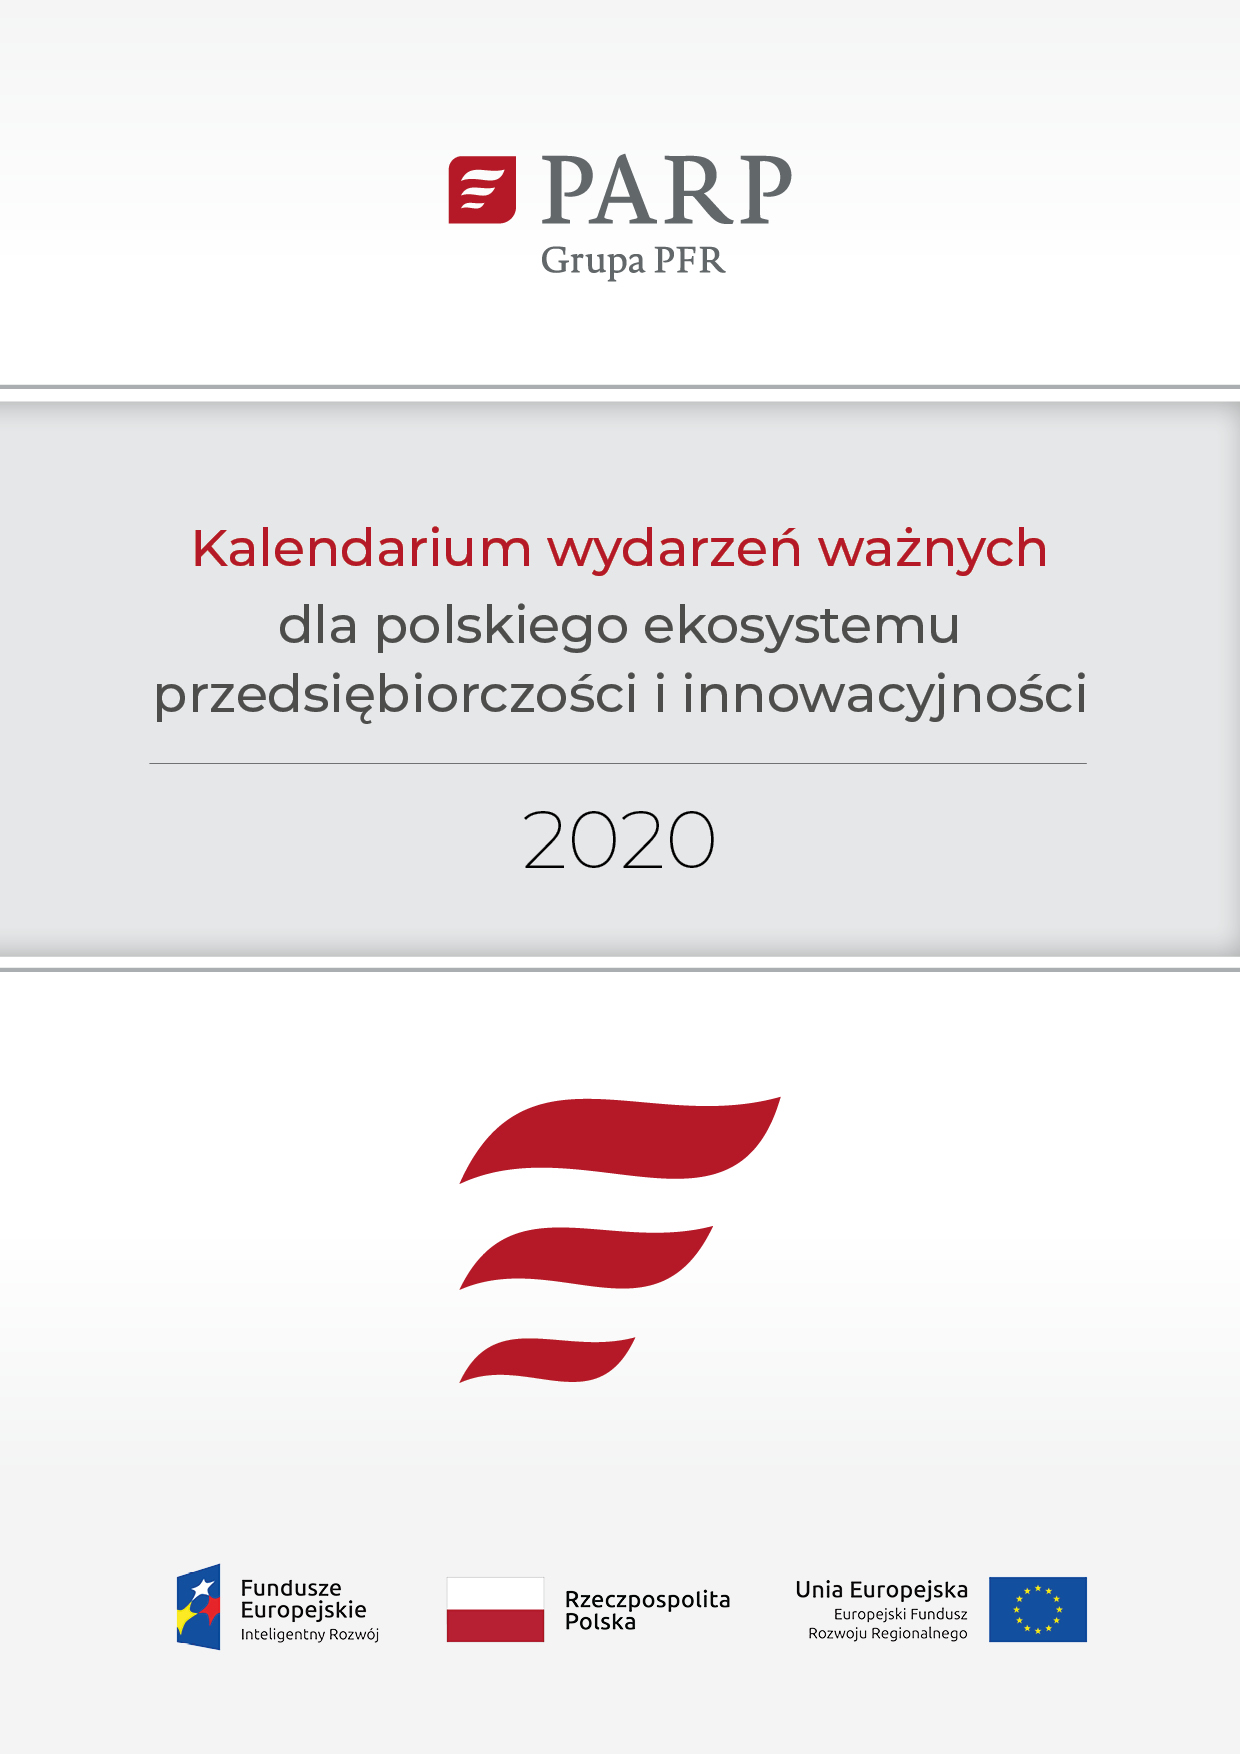 Kalendarium ważnych wydarzeń dla polskiego ekosystemu przedsiębiorczości i innowacyjności w 2020 r.